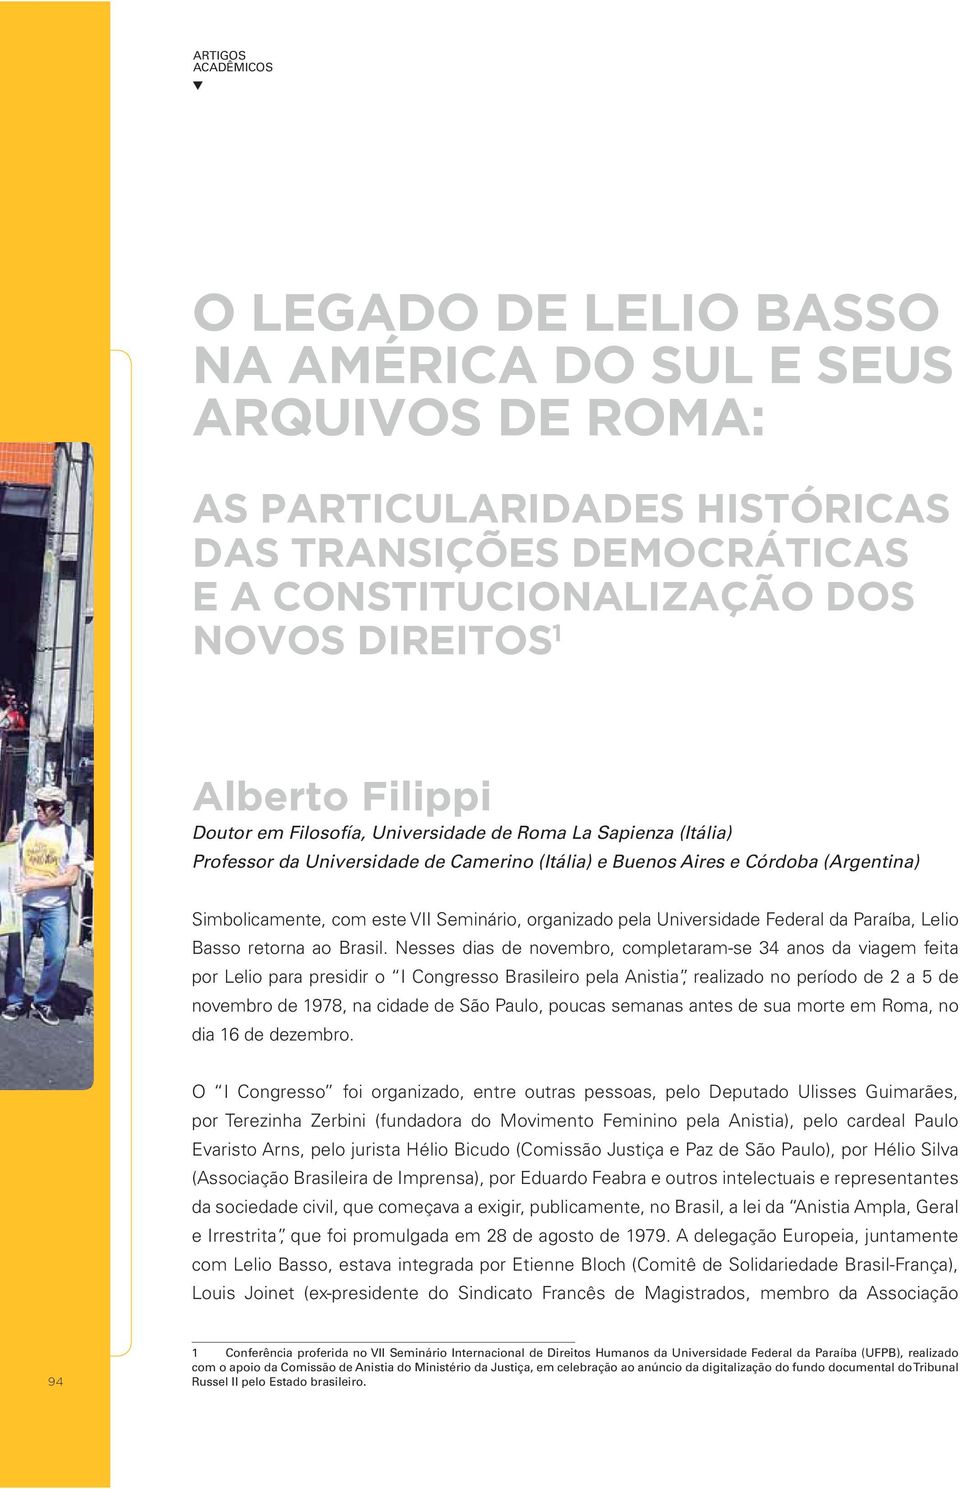 organizado pela Universidade Federal da Paraíba, Lelio Basso retorna ao Brasil.